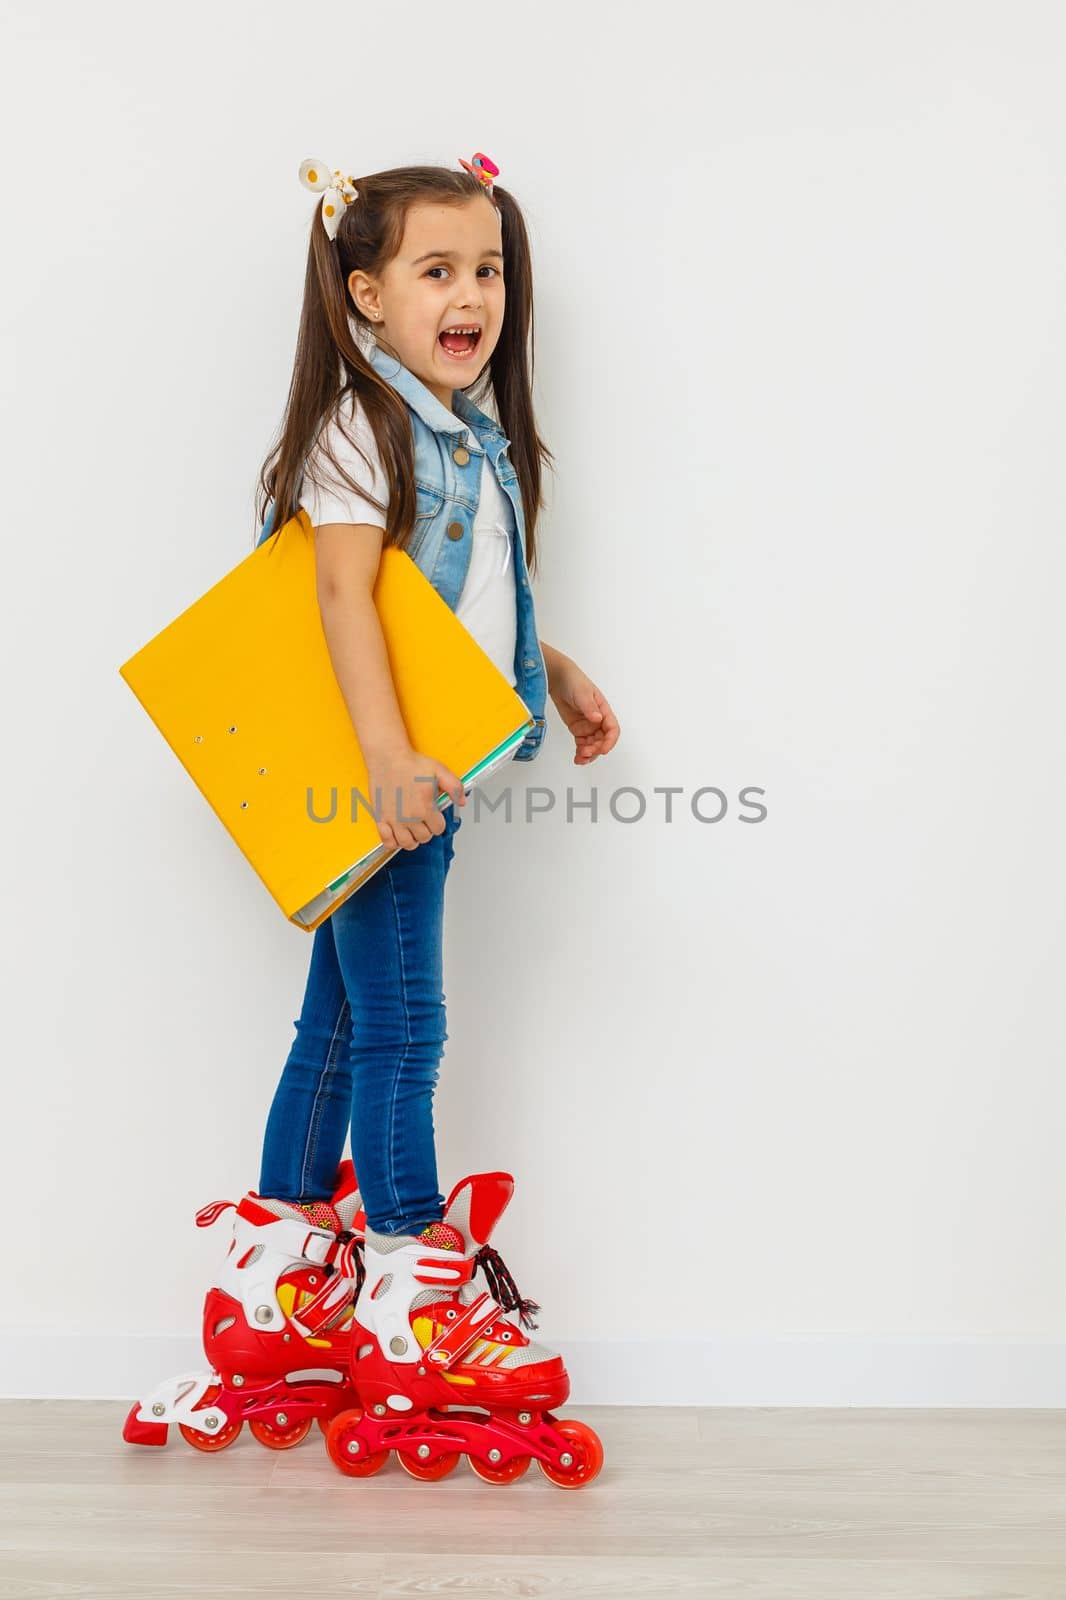 Cute girl on roller skates against white background. by Andelov13